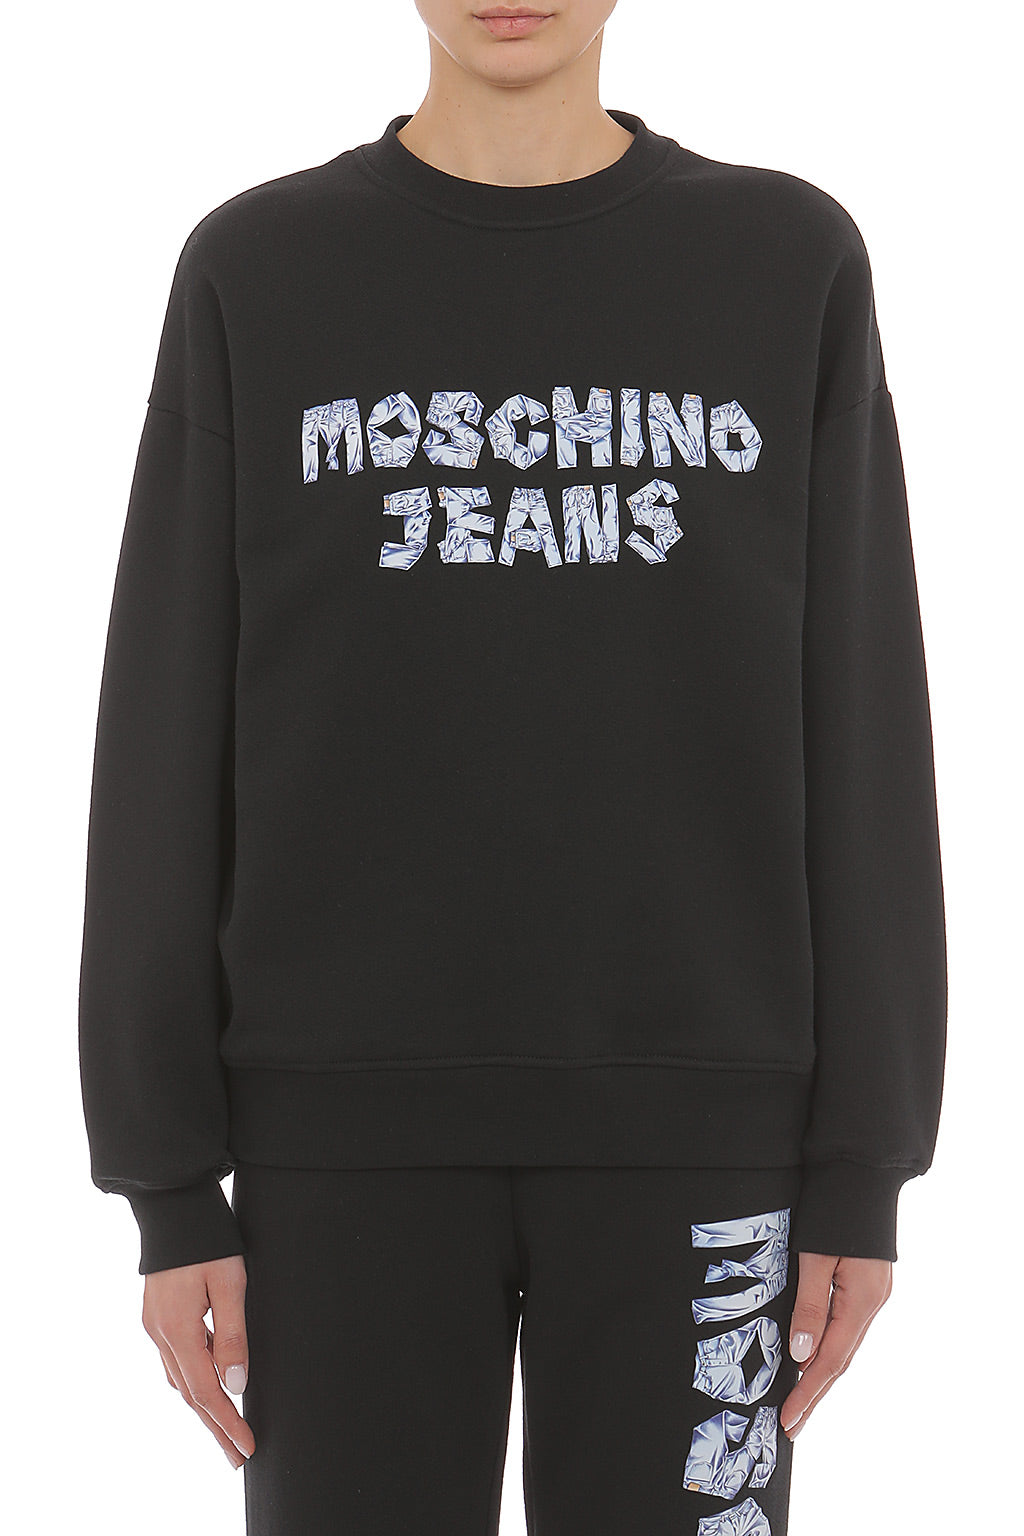 M05ch1n0 Jeans Sweatshirt Pattern Woman - 1